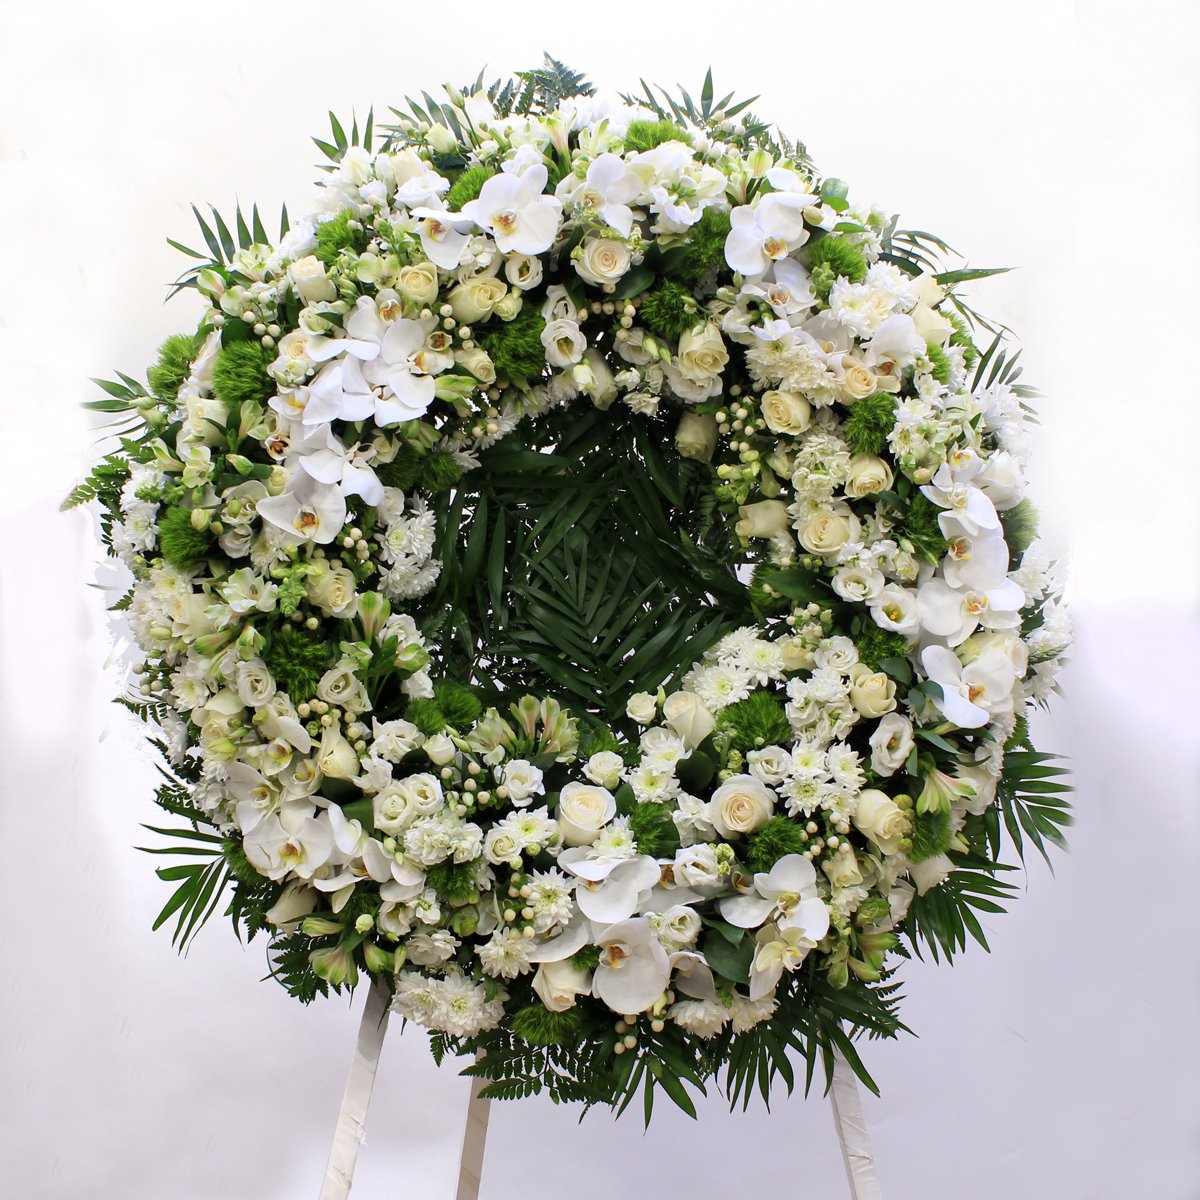 Premium funeral wreath